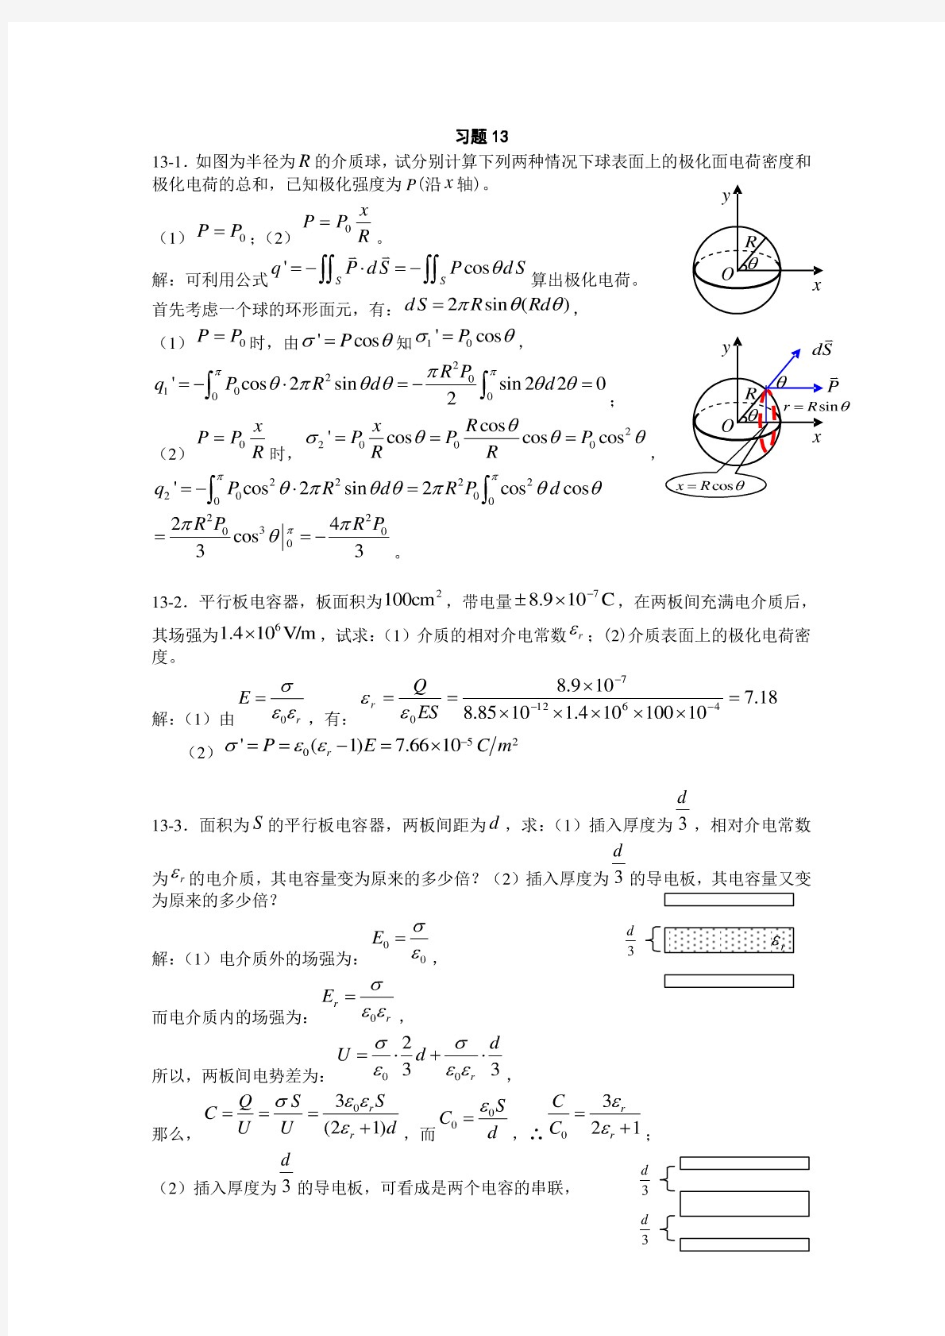 大学物理_上海交通大学_章_课后习题答案-副本(PDF)